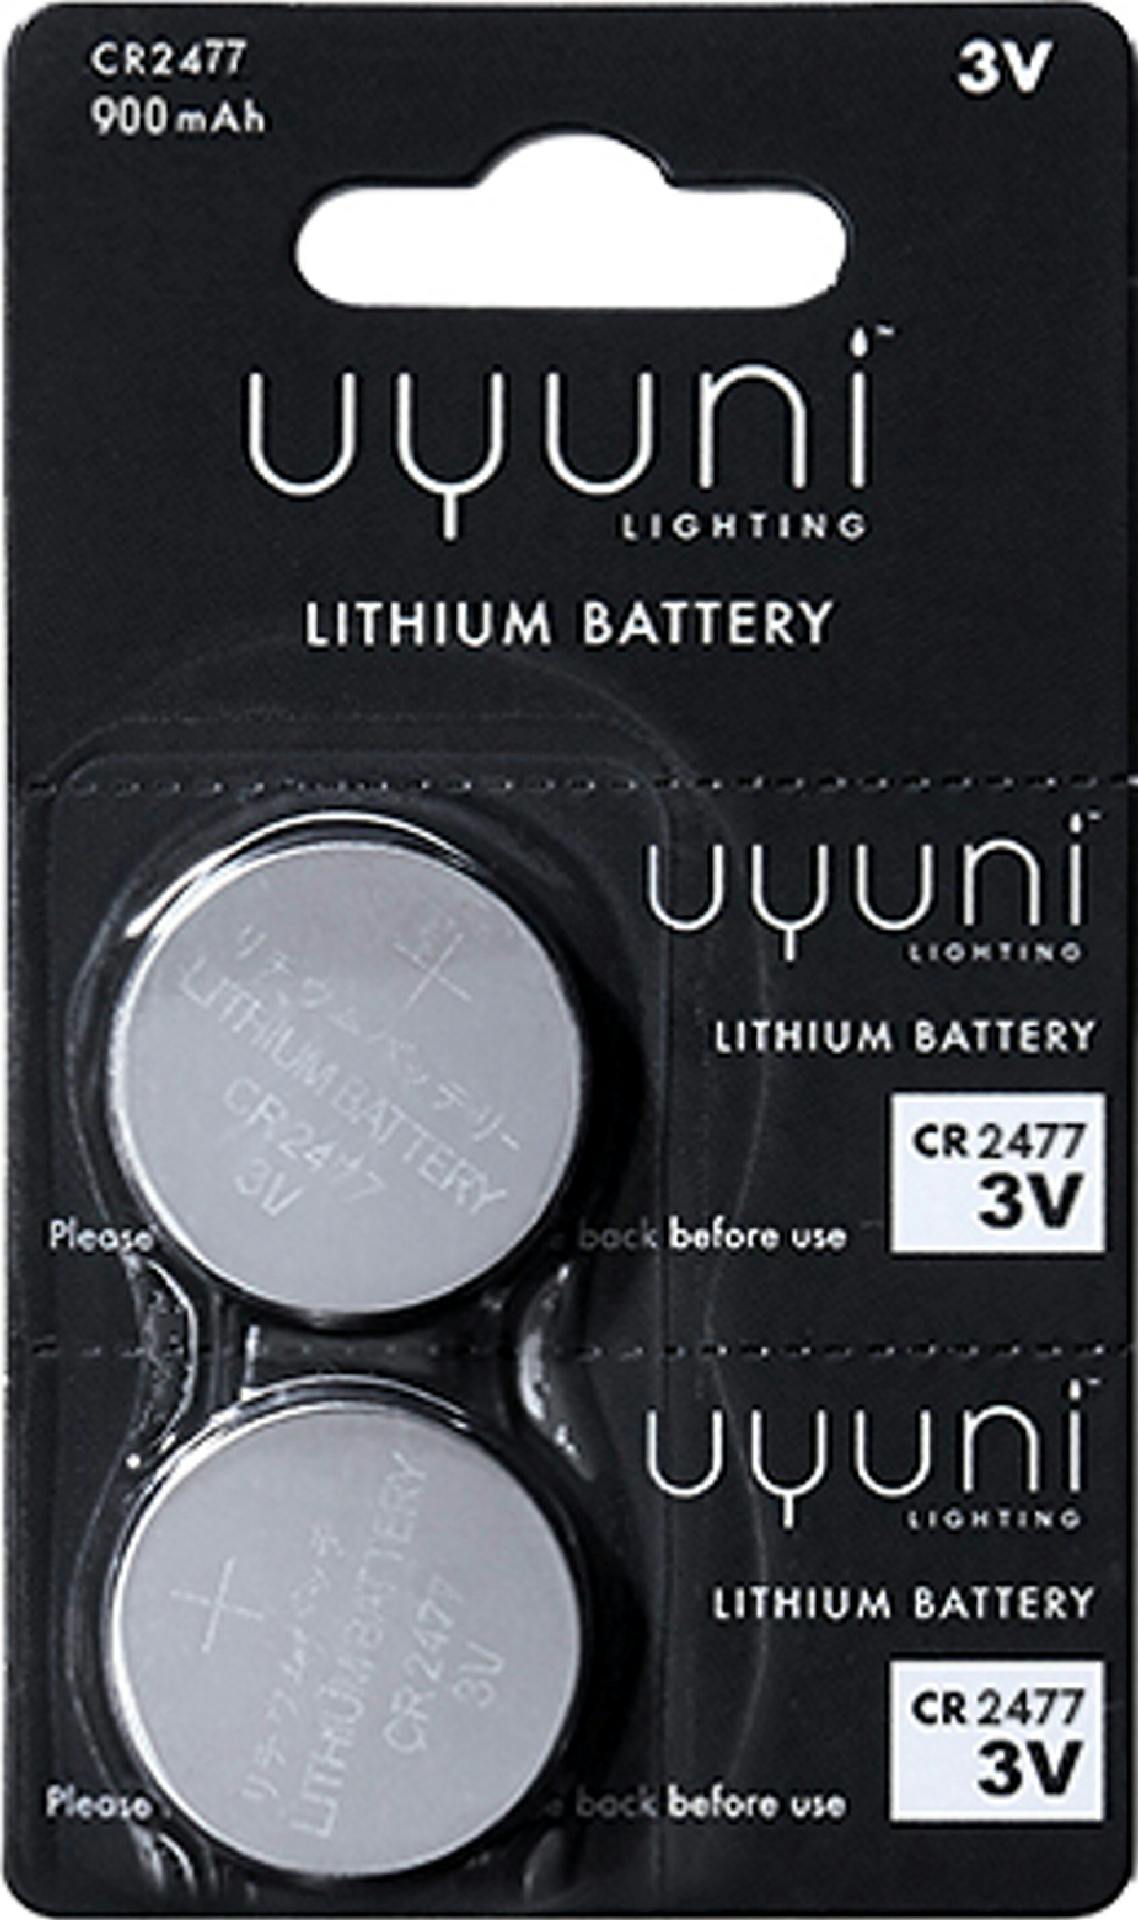 Uyuni lighting batteri 2pk